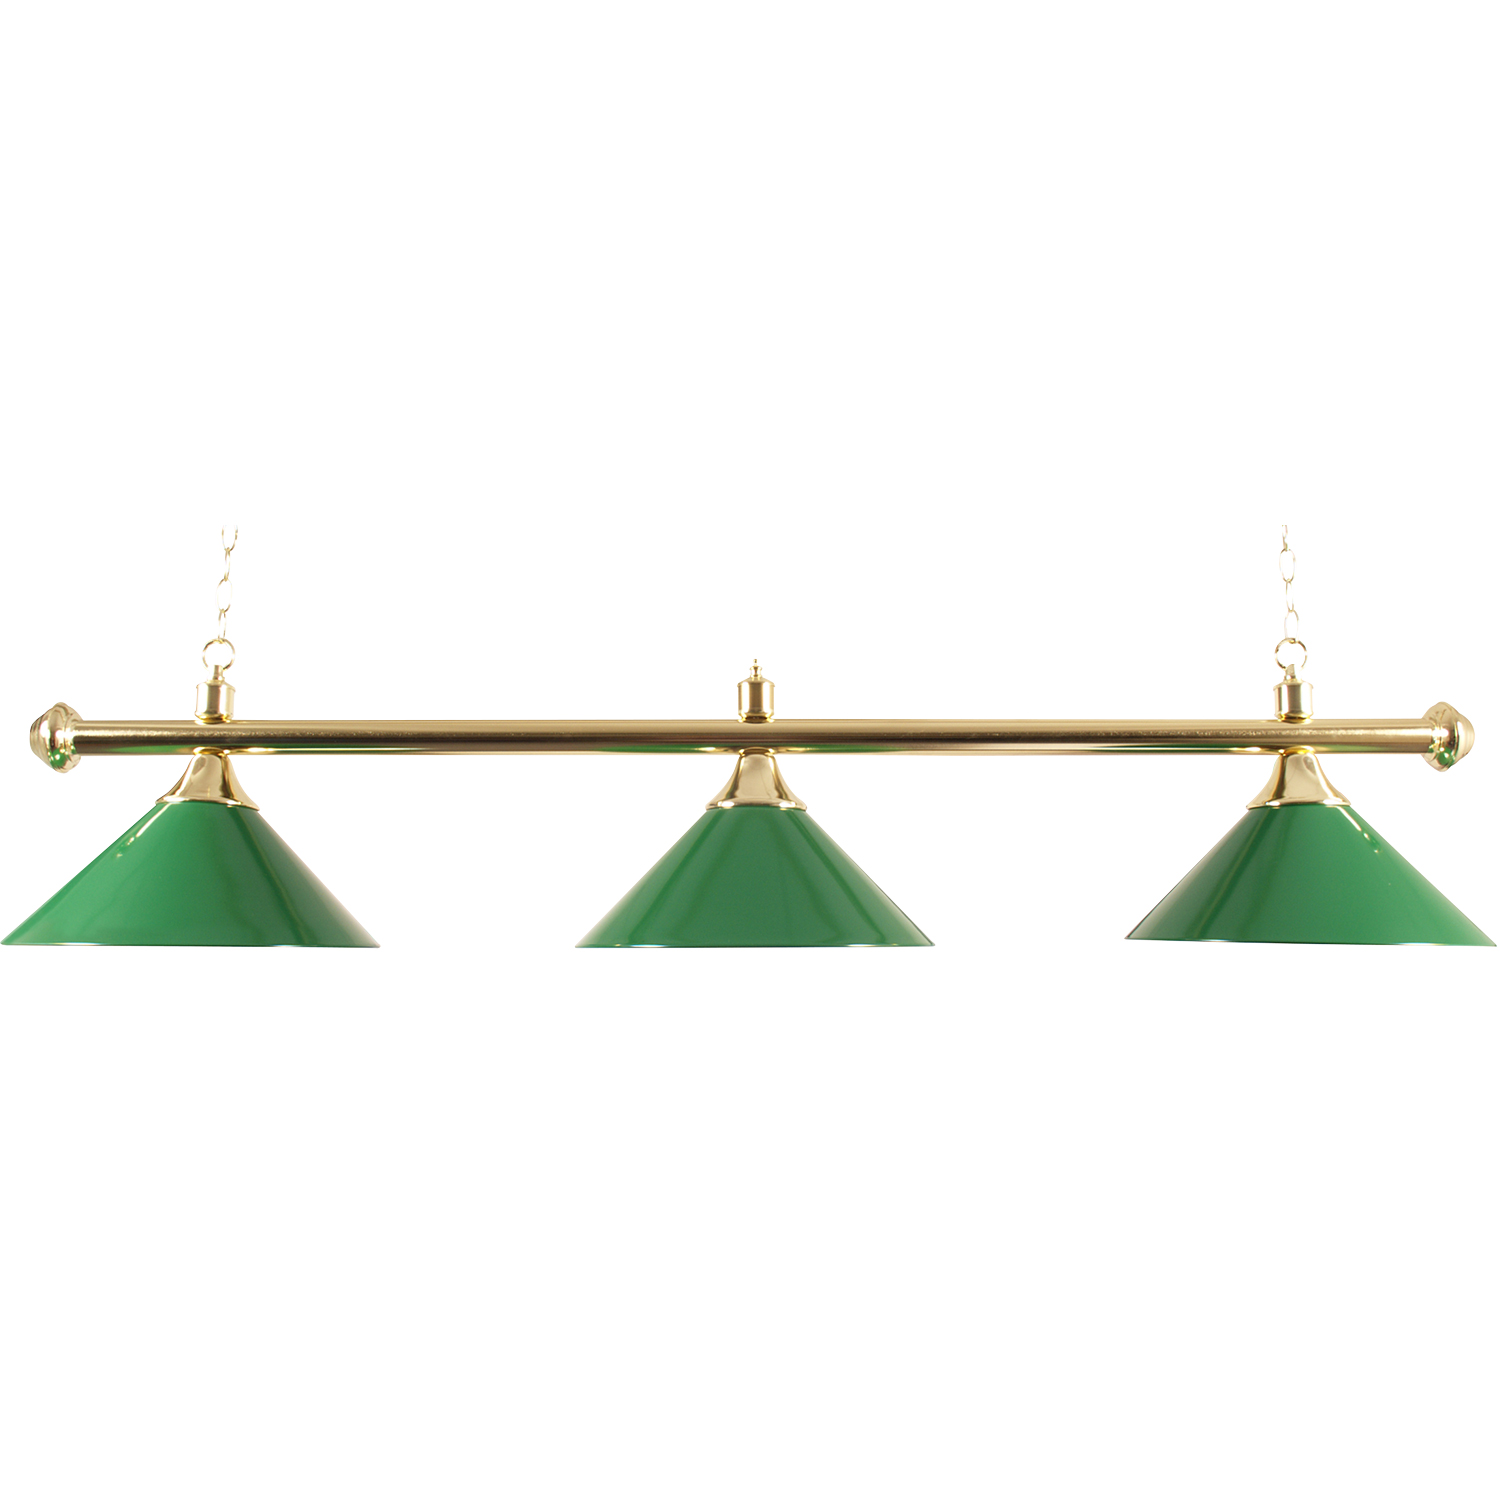 Billard-Leuchtstab mit drei Schirmen, grün